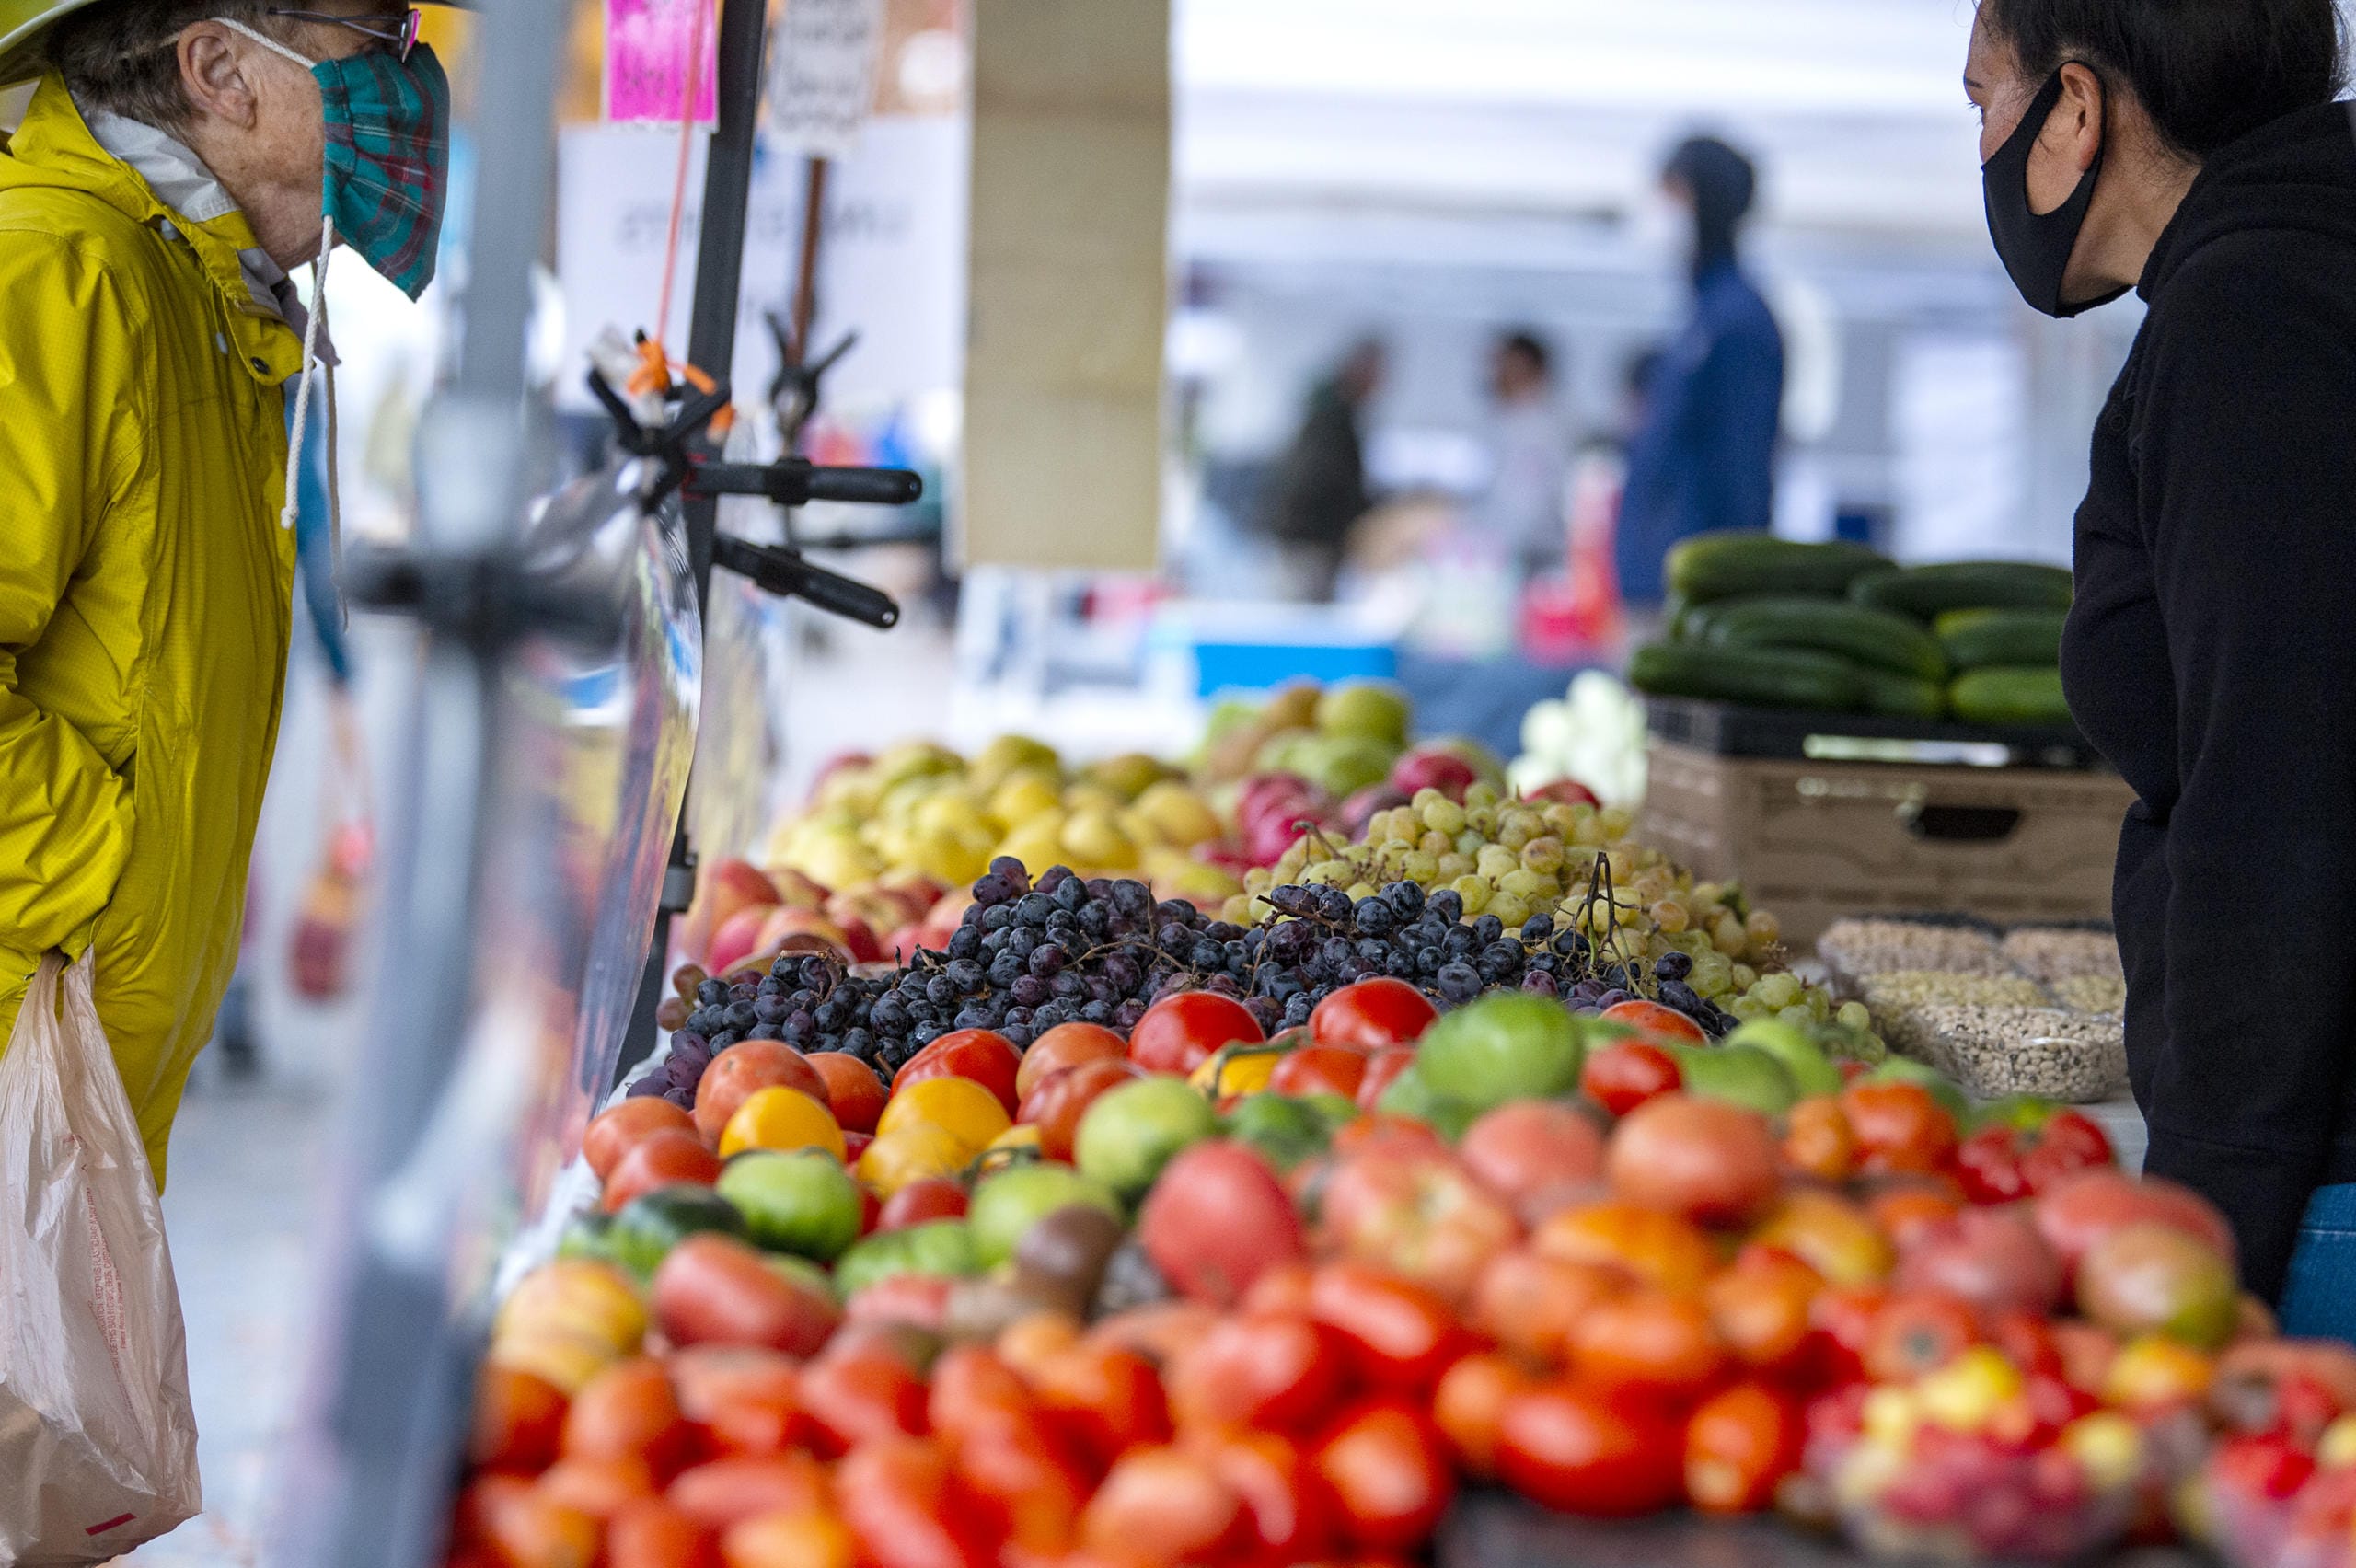 Vancouver Farmers Market opens fall season